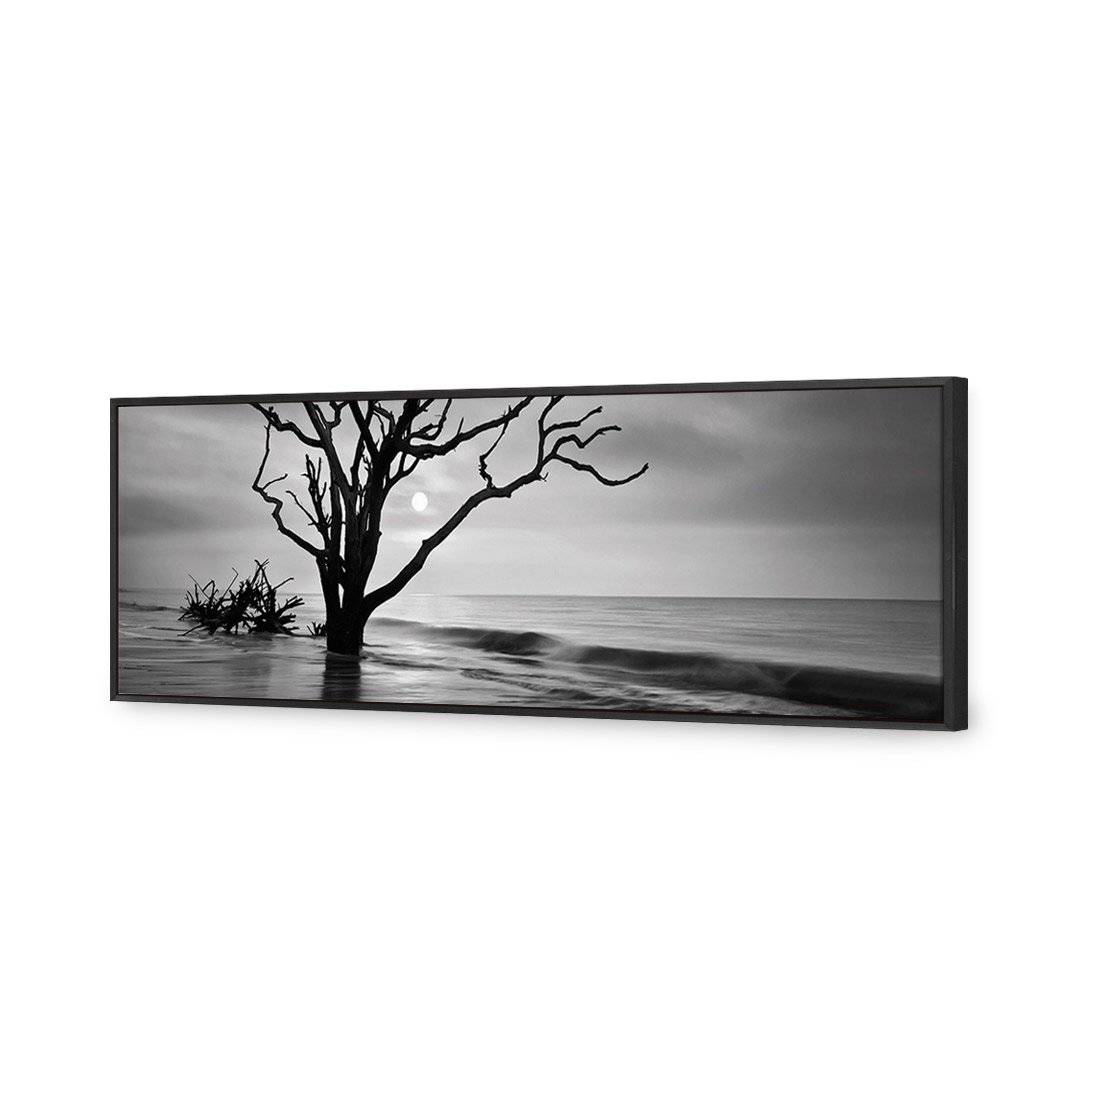 Botany Bay Sunrise, B&W Canvas Art-Canvas-Wall Art Designs-60x20cm-Canvas - Black Frame-Wall Art Designs